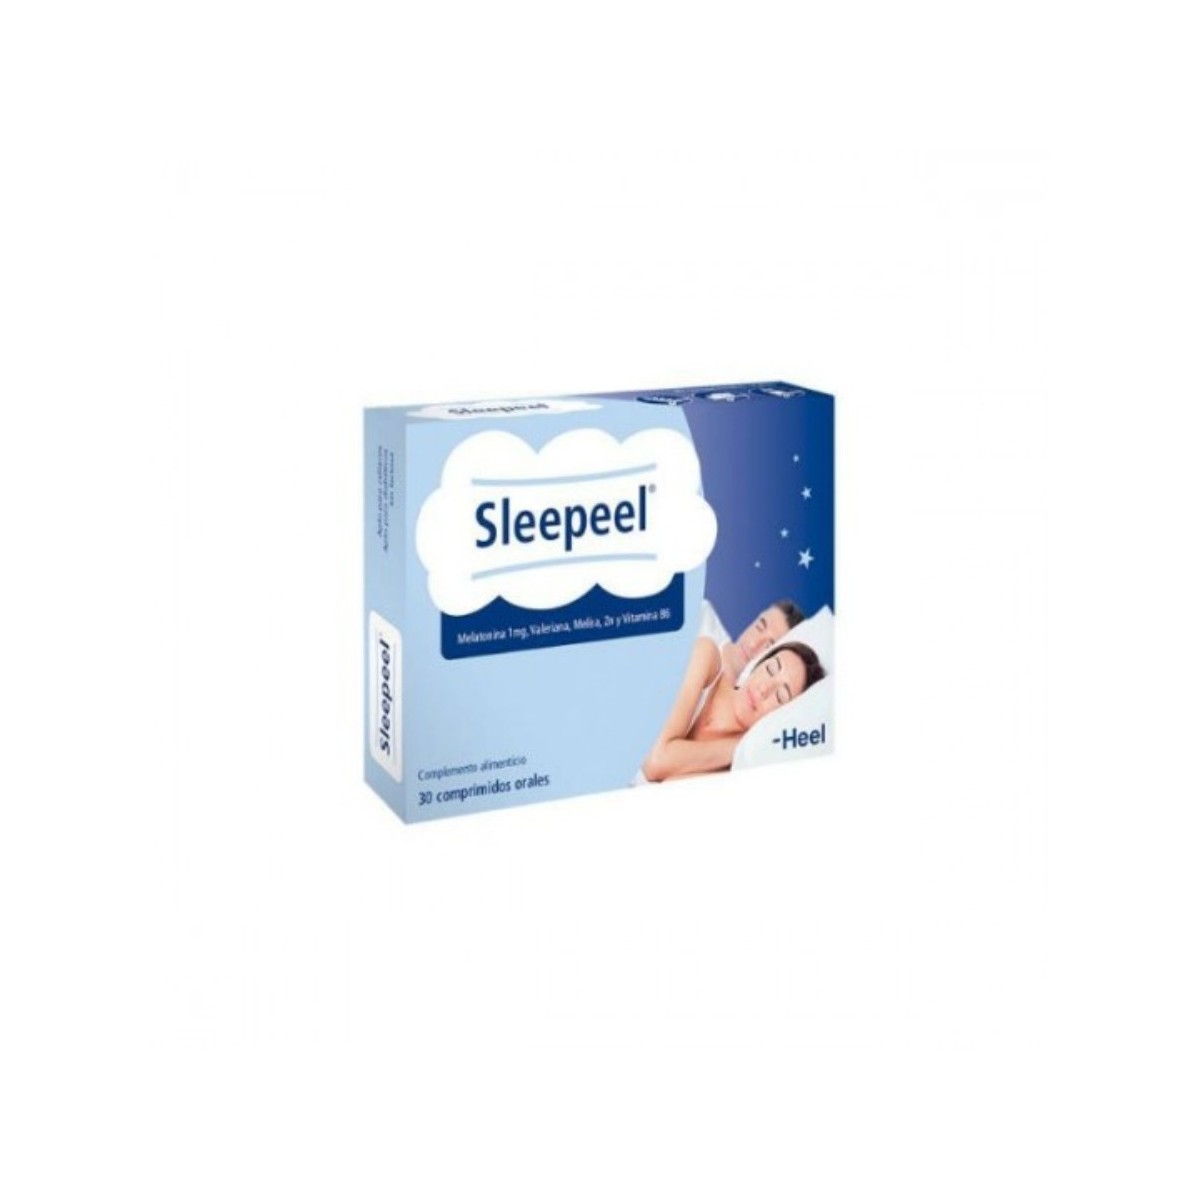 sleepeel 1 mg 30 comp